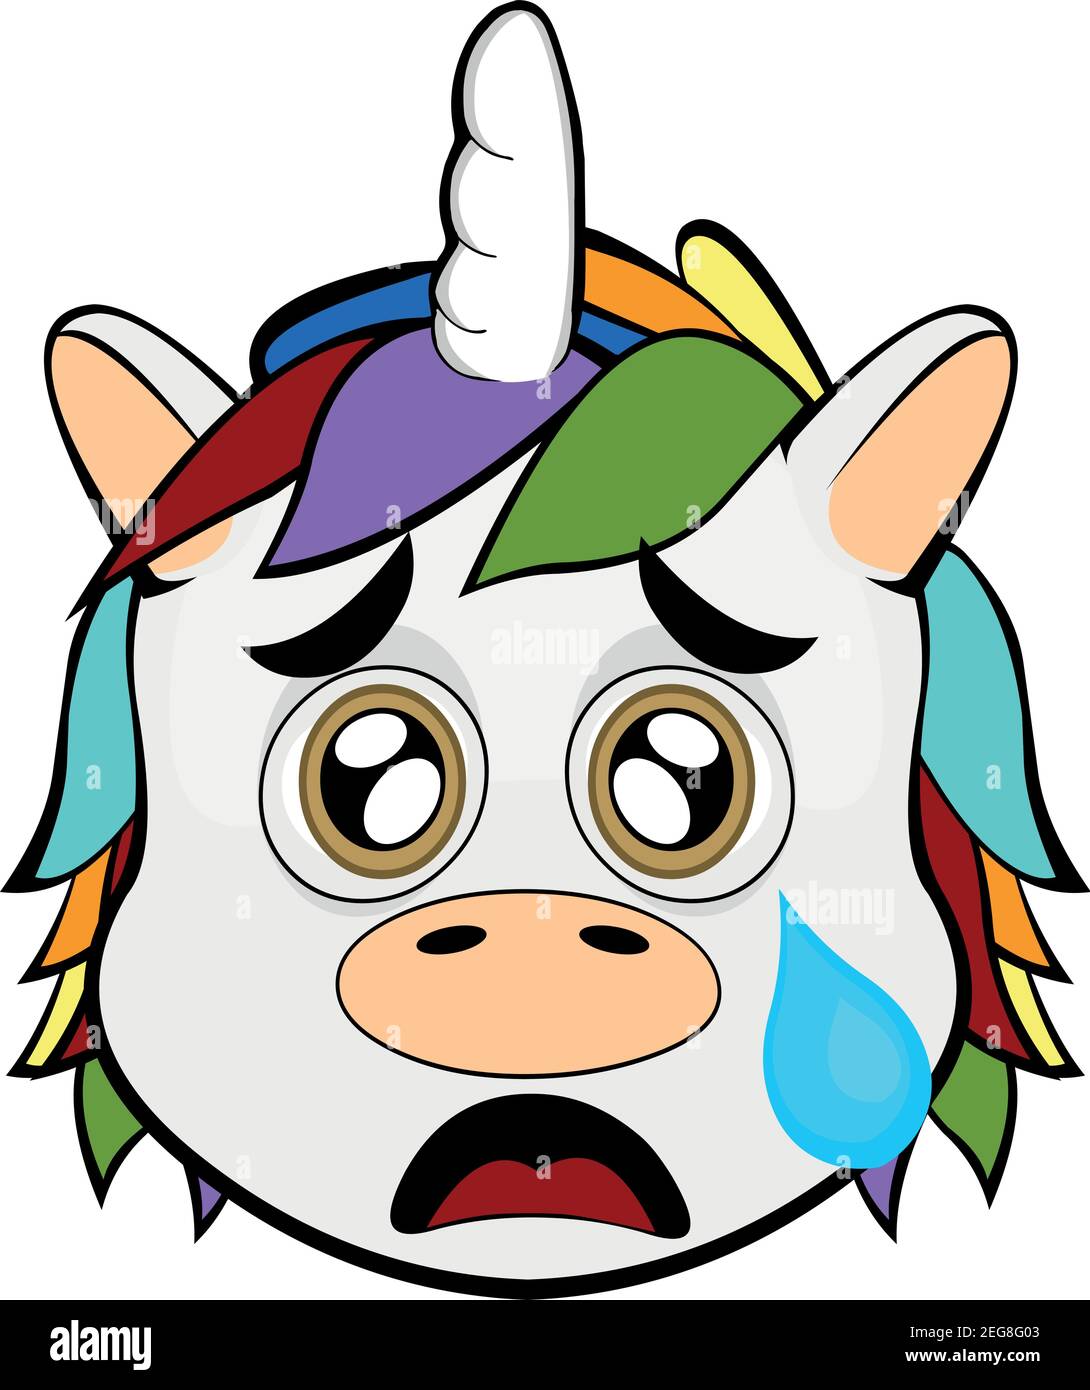 Vecteur émoticône illustration dessin animé d'une tête de licorne avec une expression triste et pleurant avec une déchirure tombant de son oeil sur sa joue Illustration de Vecteur